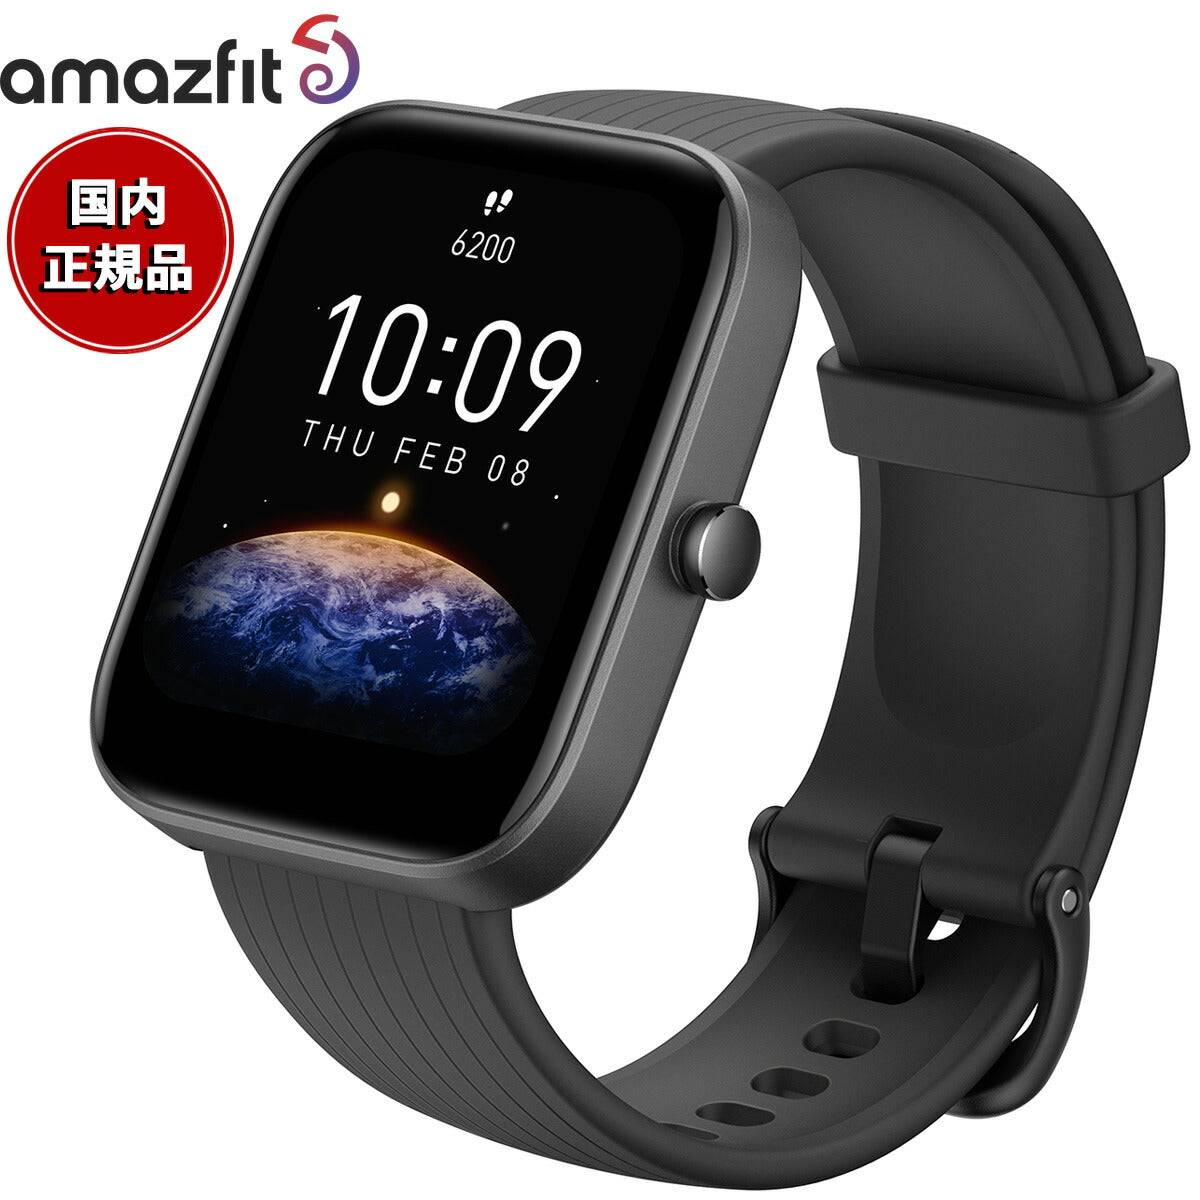 アマズフィット AMAZFIT スマートウォッチ Bip 3 Pro ブラック GPS 腕時計 メンズ レディース 健康管理 心拍計 血中酸素  android対応 SP170047C01